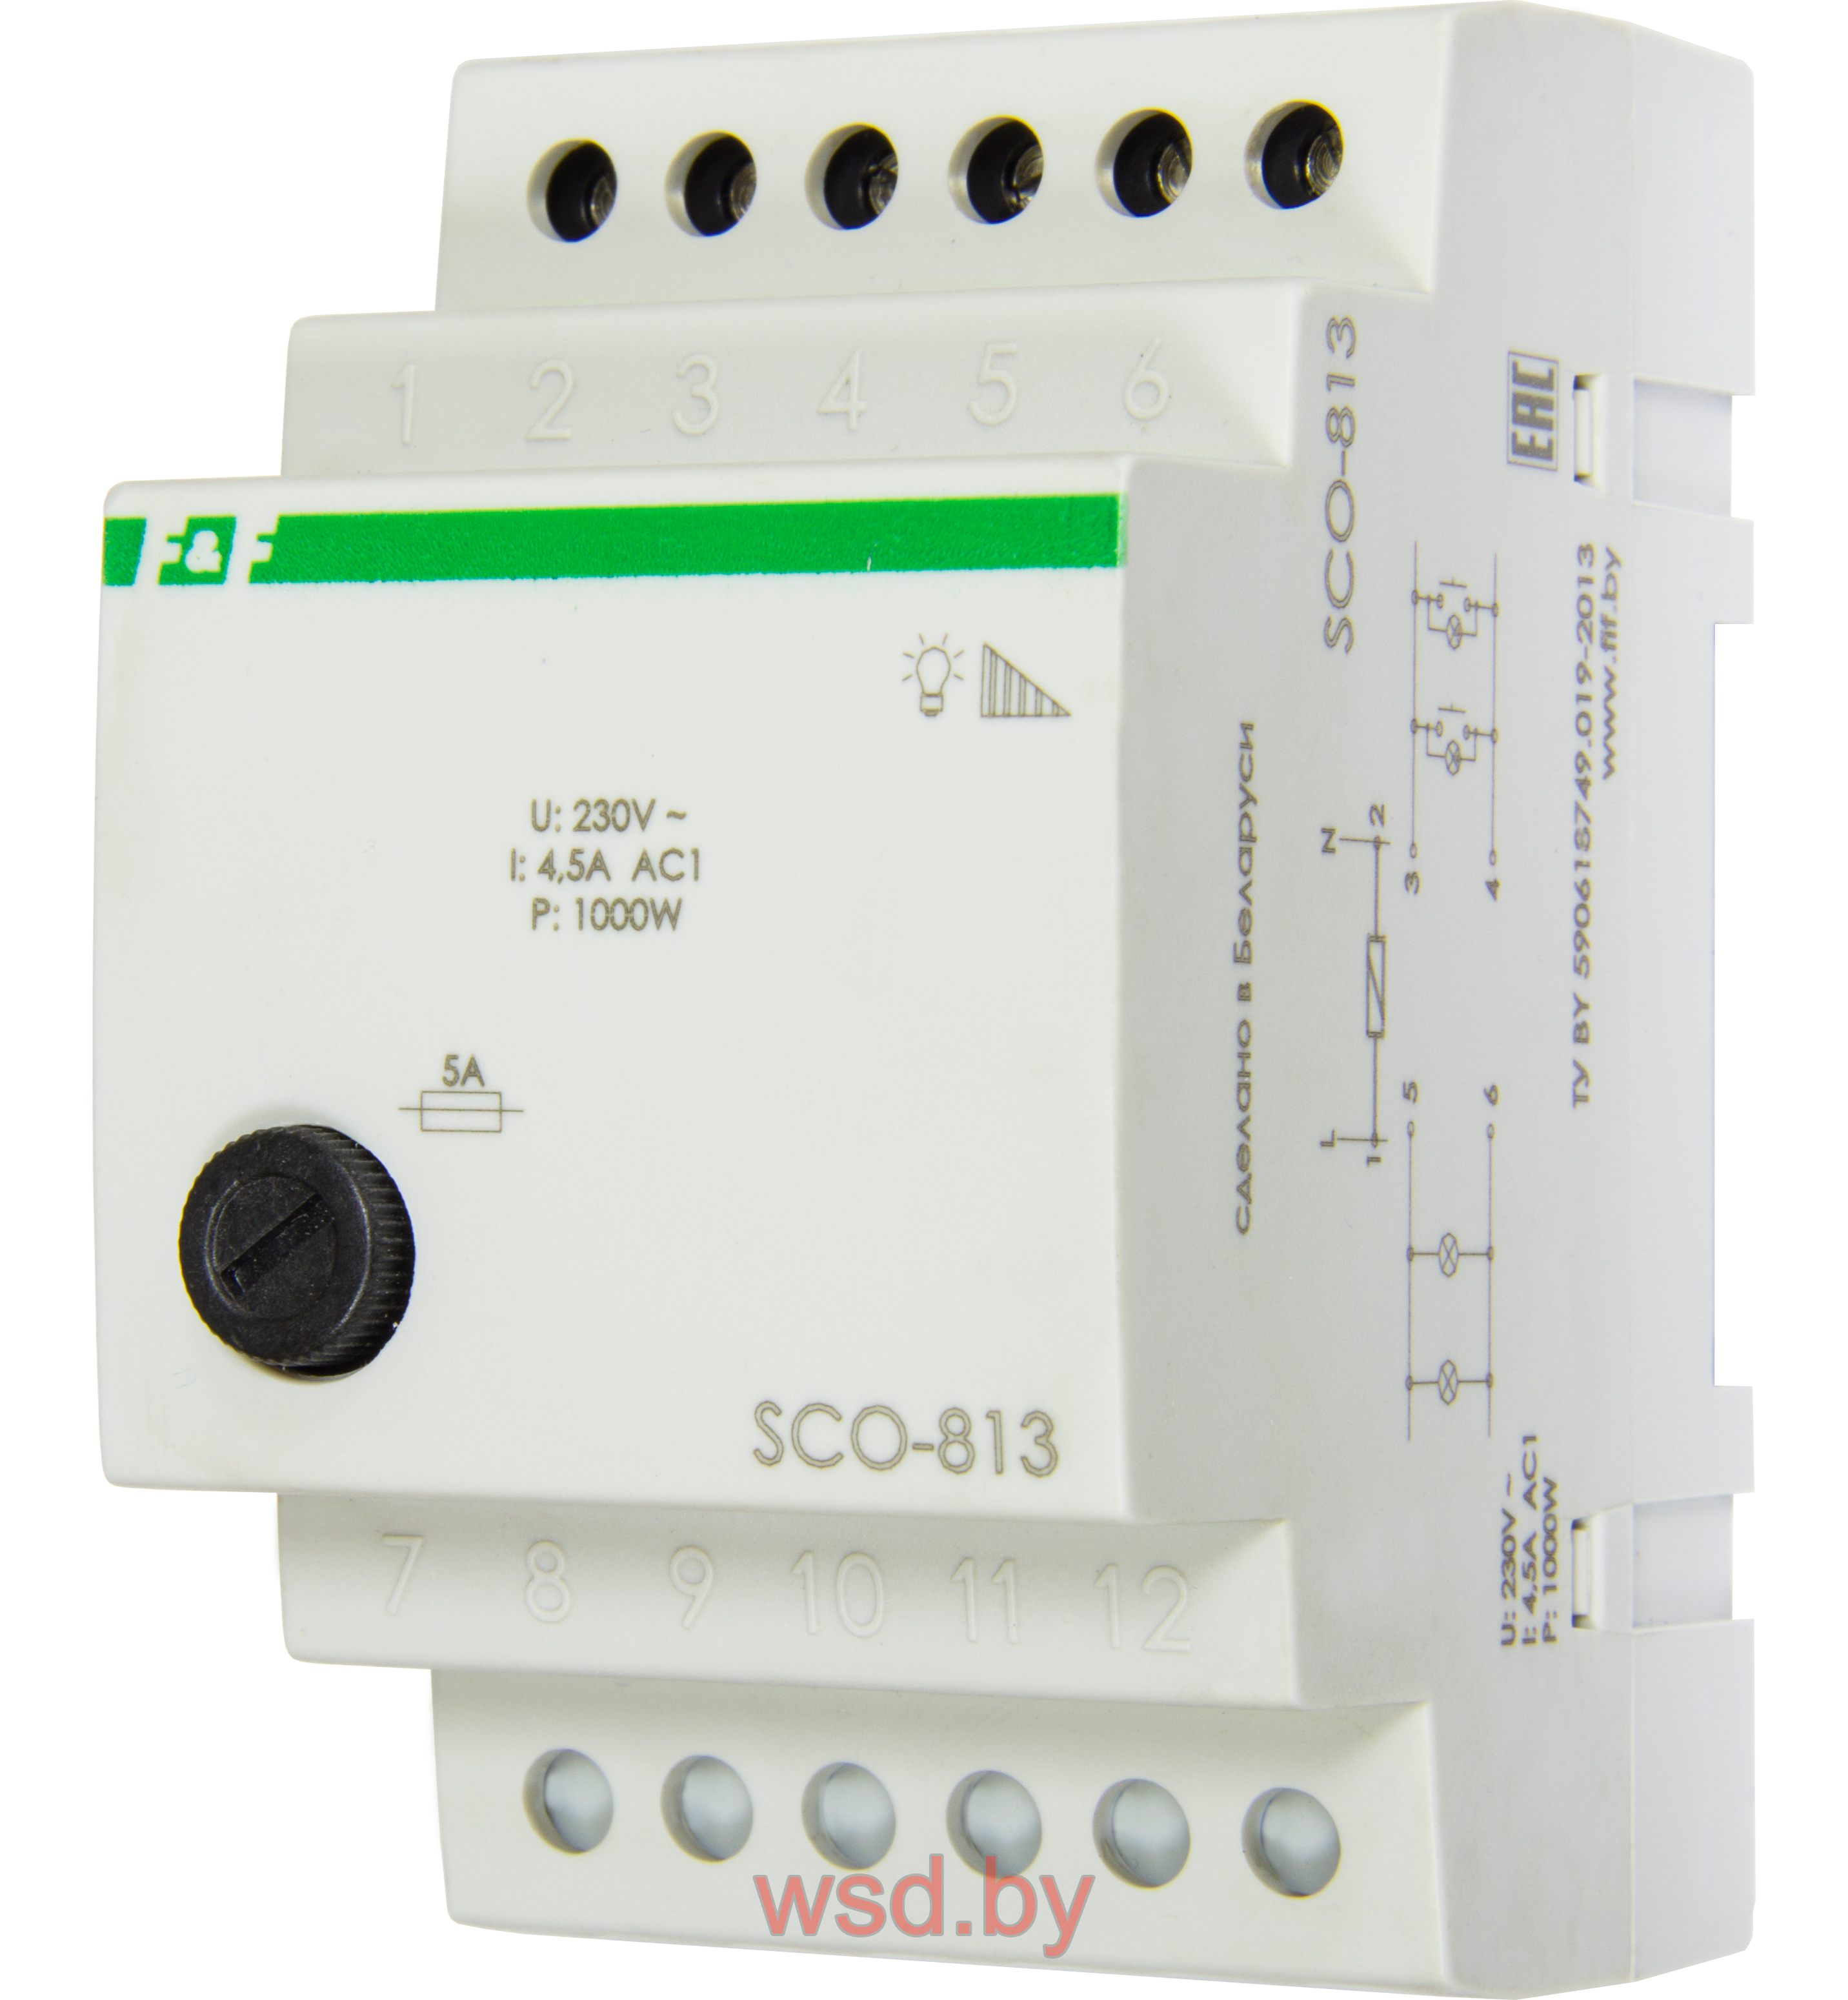 SCO-813 регулятор яркости освещения для ламп накаливания мощность до 1000Вт, 3 модуля, монтаж на DIN-рейке 230В AC 4,5А IP20